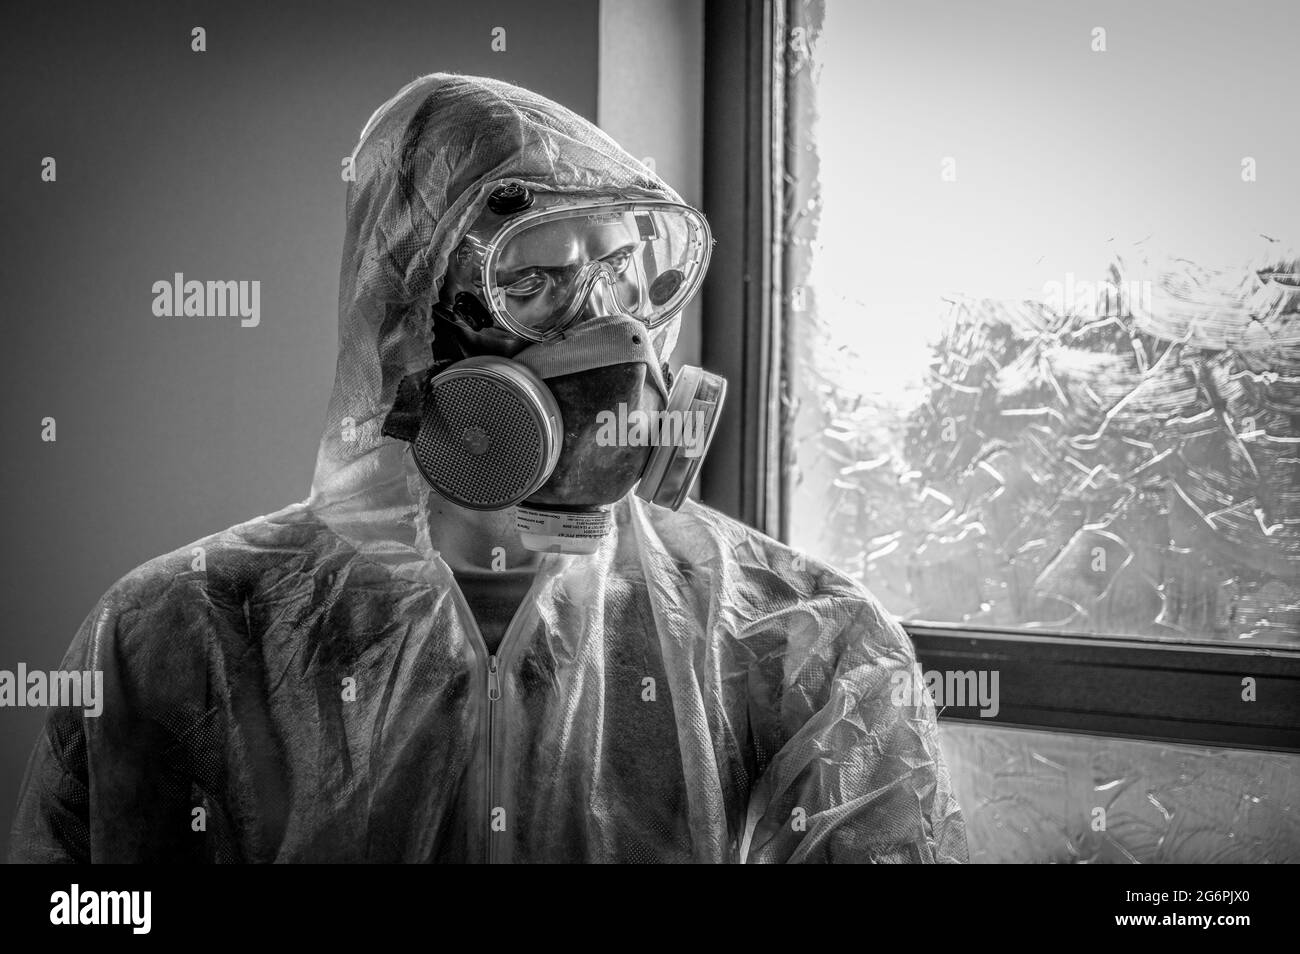 Mannequin portant un costume de noisette pendant l'épidémie. Noir et blanc. Banque D'Images